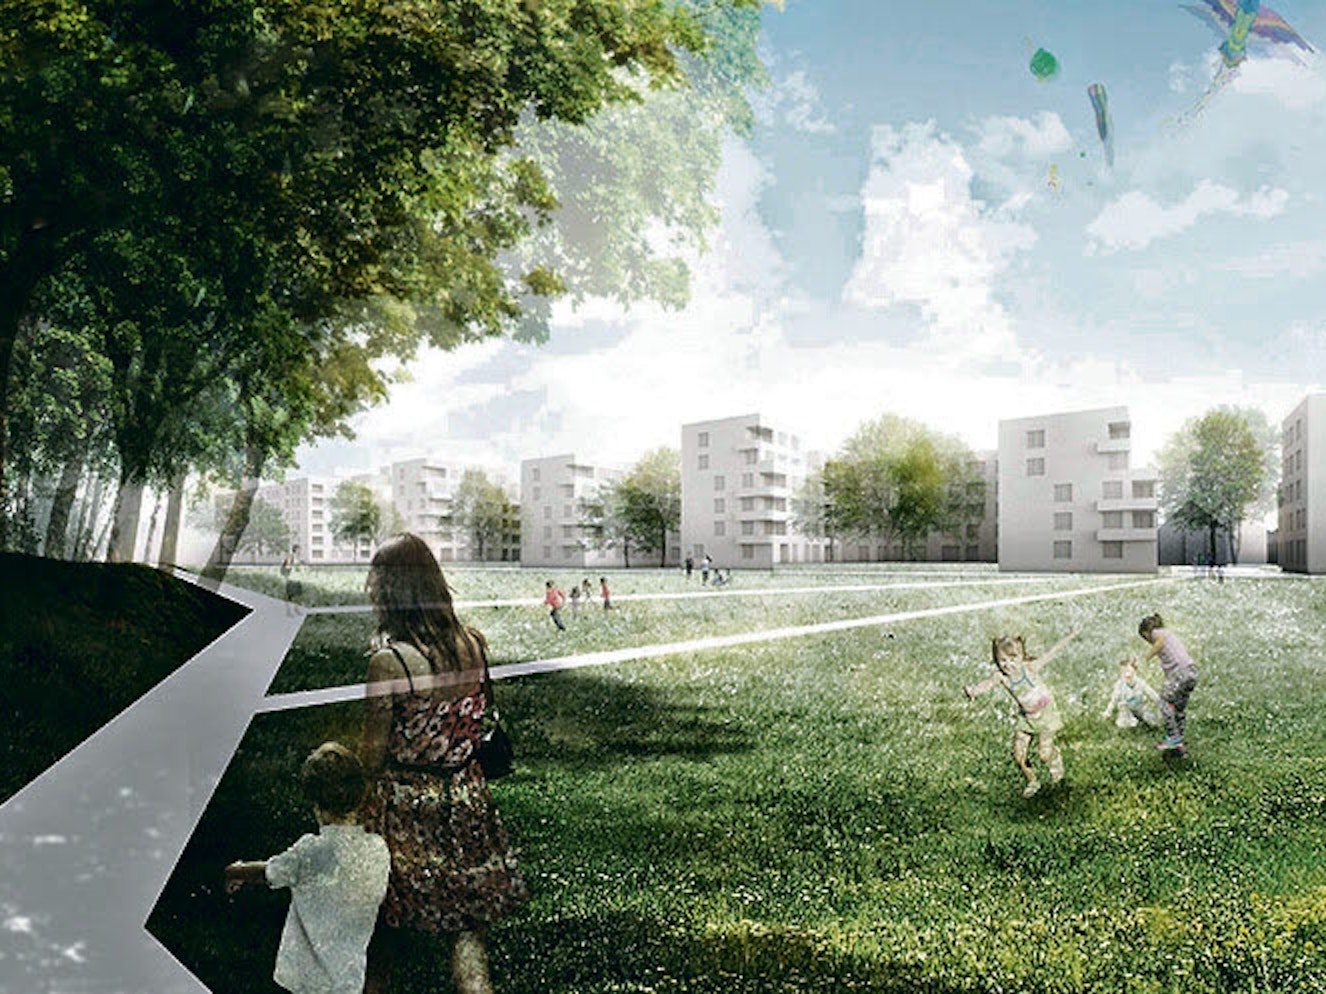 „Wohnen am Park“ heißt das beim Wettbewerb siegreiche Siedlungs-Modell des Architektenbüros Lorenzen/Mayer.